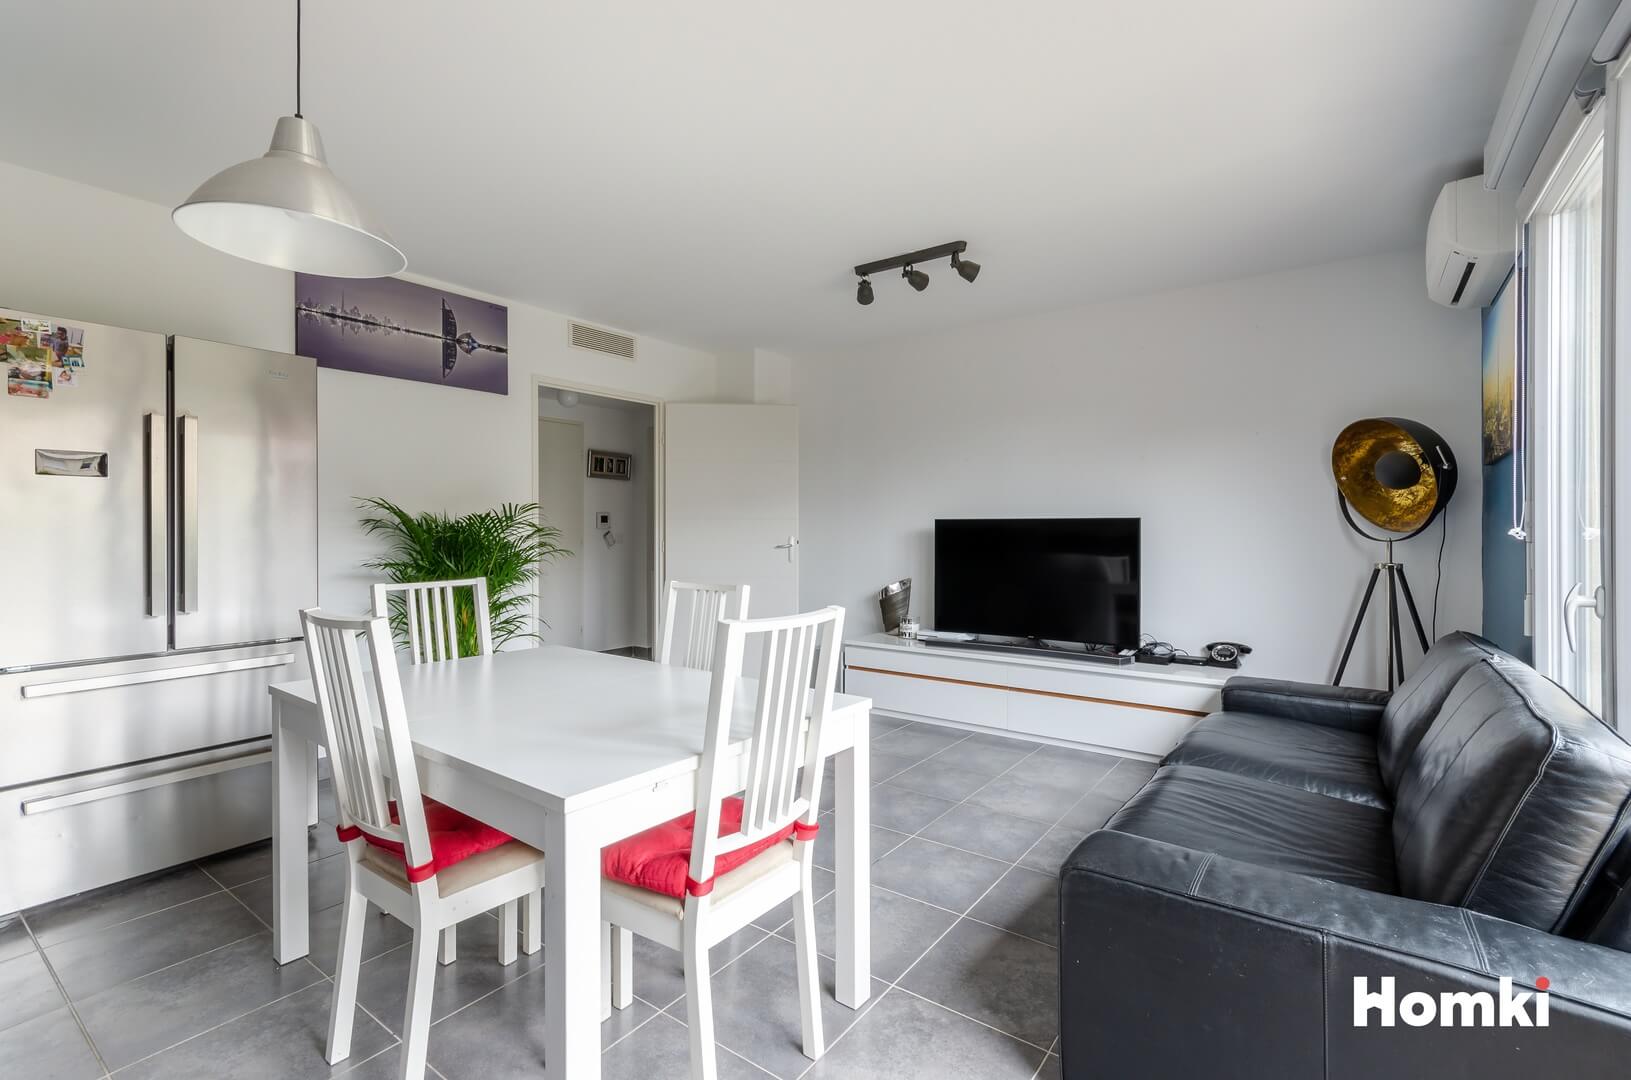 Homki - Vente Appartement  de 60.0 m² à Aix-en-Provence 13090